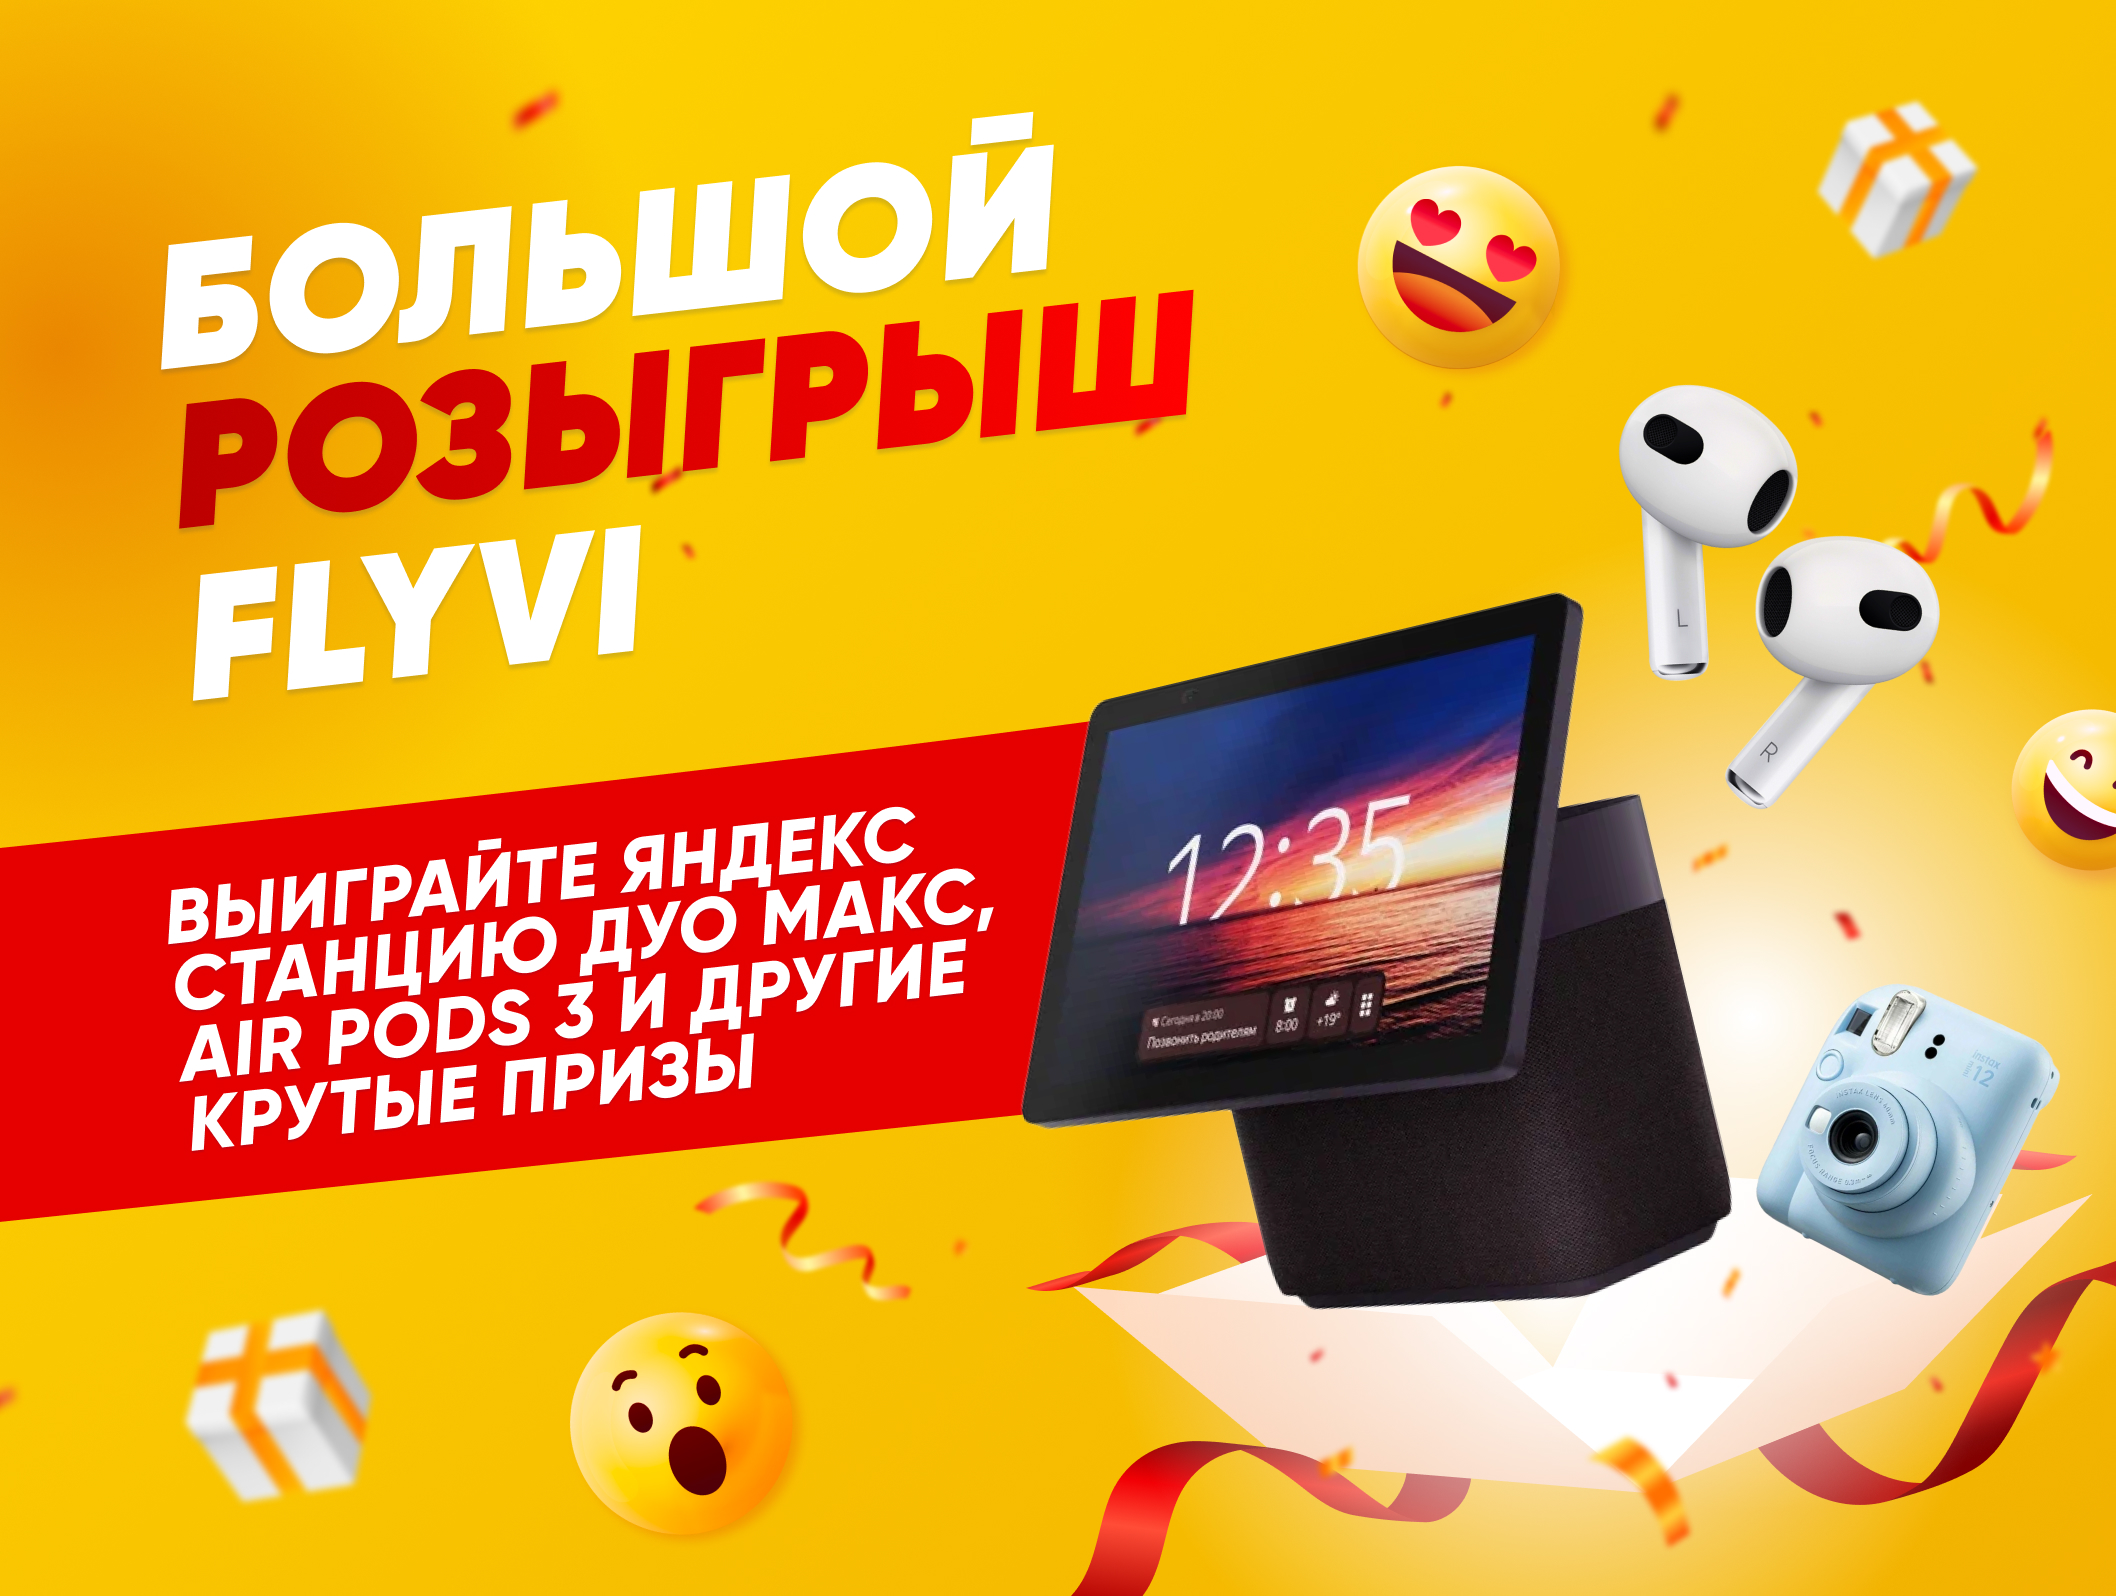 🎁 Разыгрываем Яндекс Станцию Дуо Макс макс, Air Pods 3 и еще много крутых подарков.